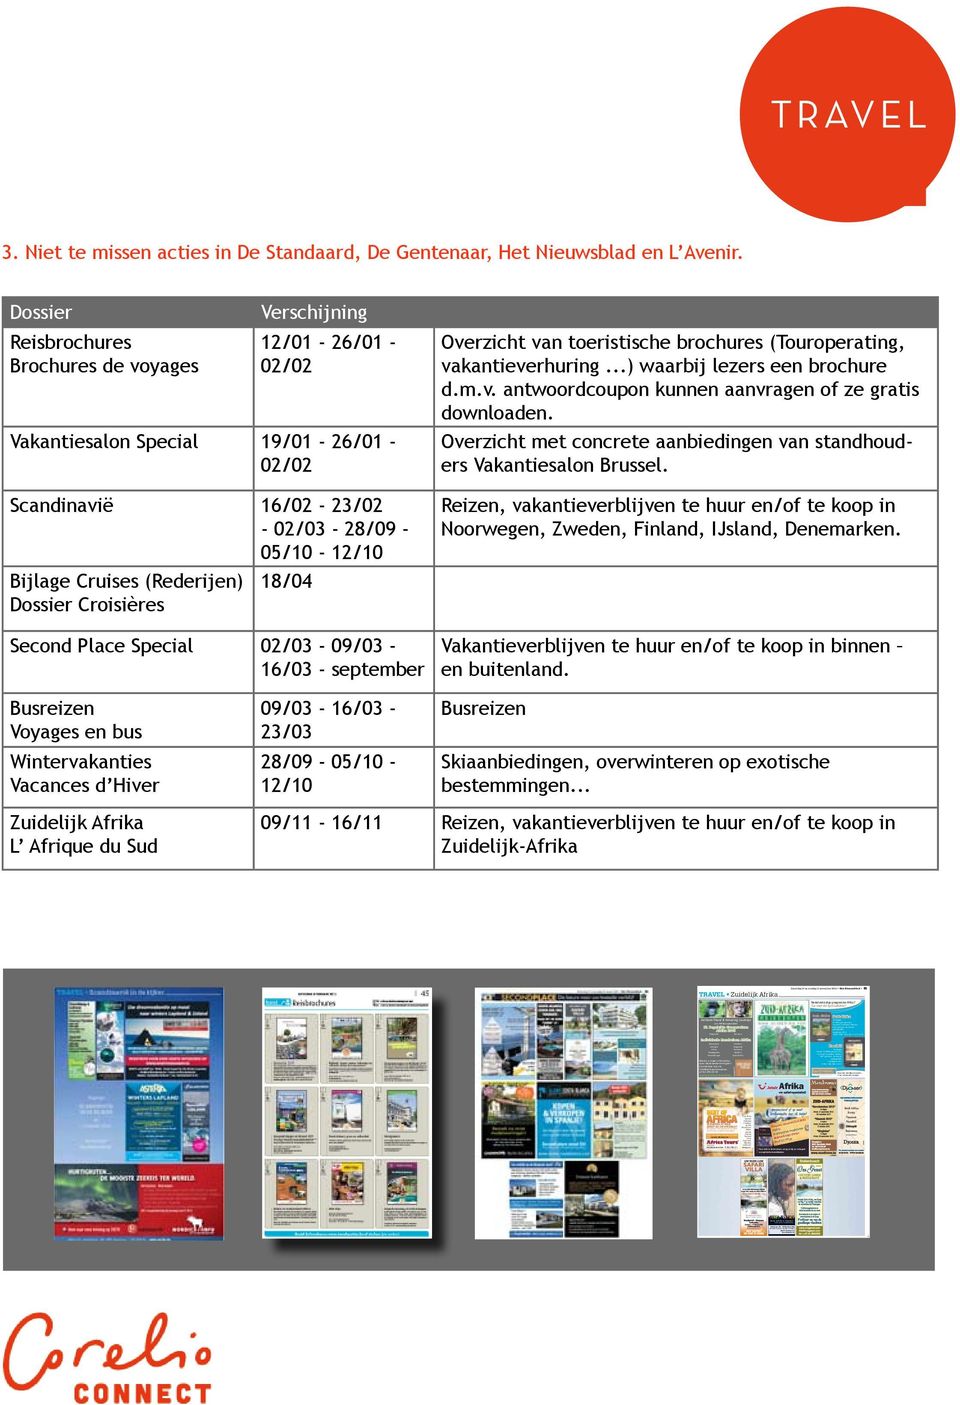 Dossier Croisières Overzicht van toeristische brochures (Touroperating, vakantieverhuring...) waarbij lezers een brochure d.m.v. antwoordcoupon kunnen aanvragen of ze gratis downloaden.